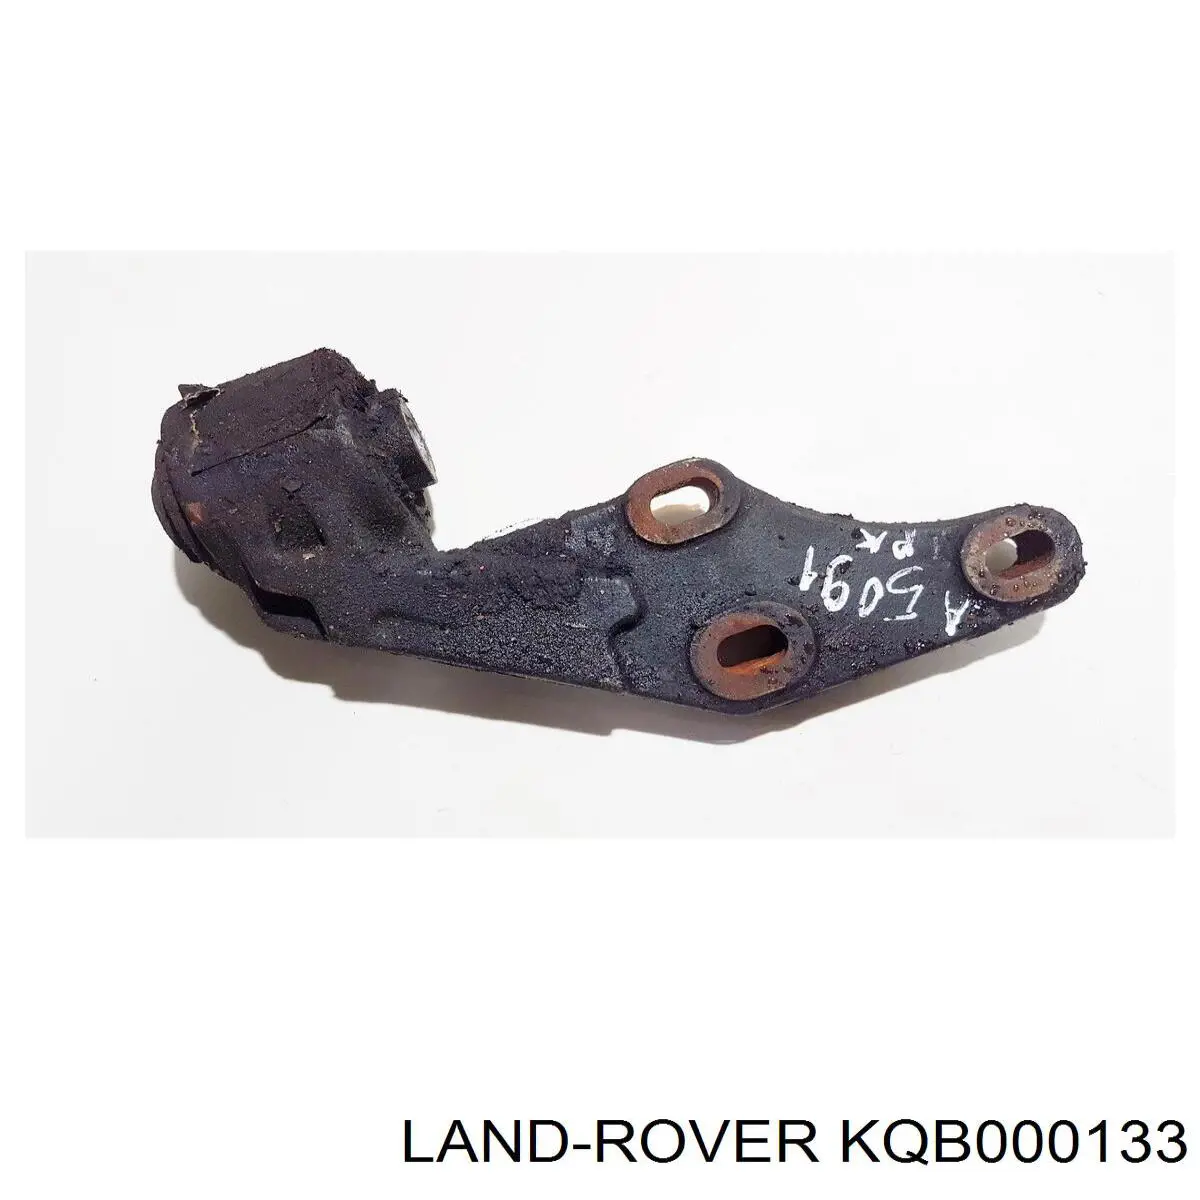 Сайлентблок траверсы крепления переднего редуктора задний Land Rover KQB000133